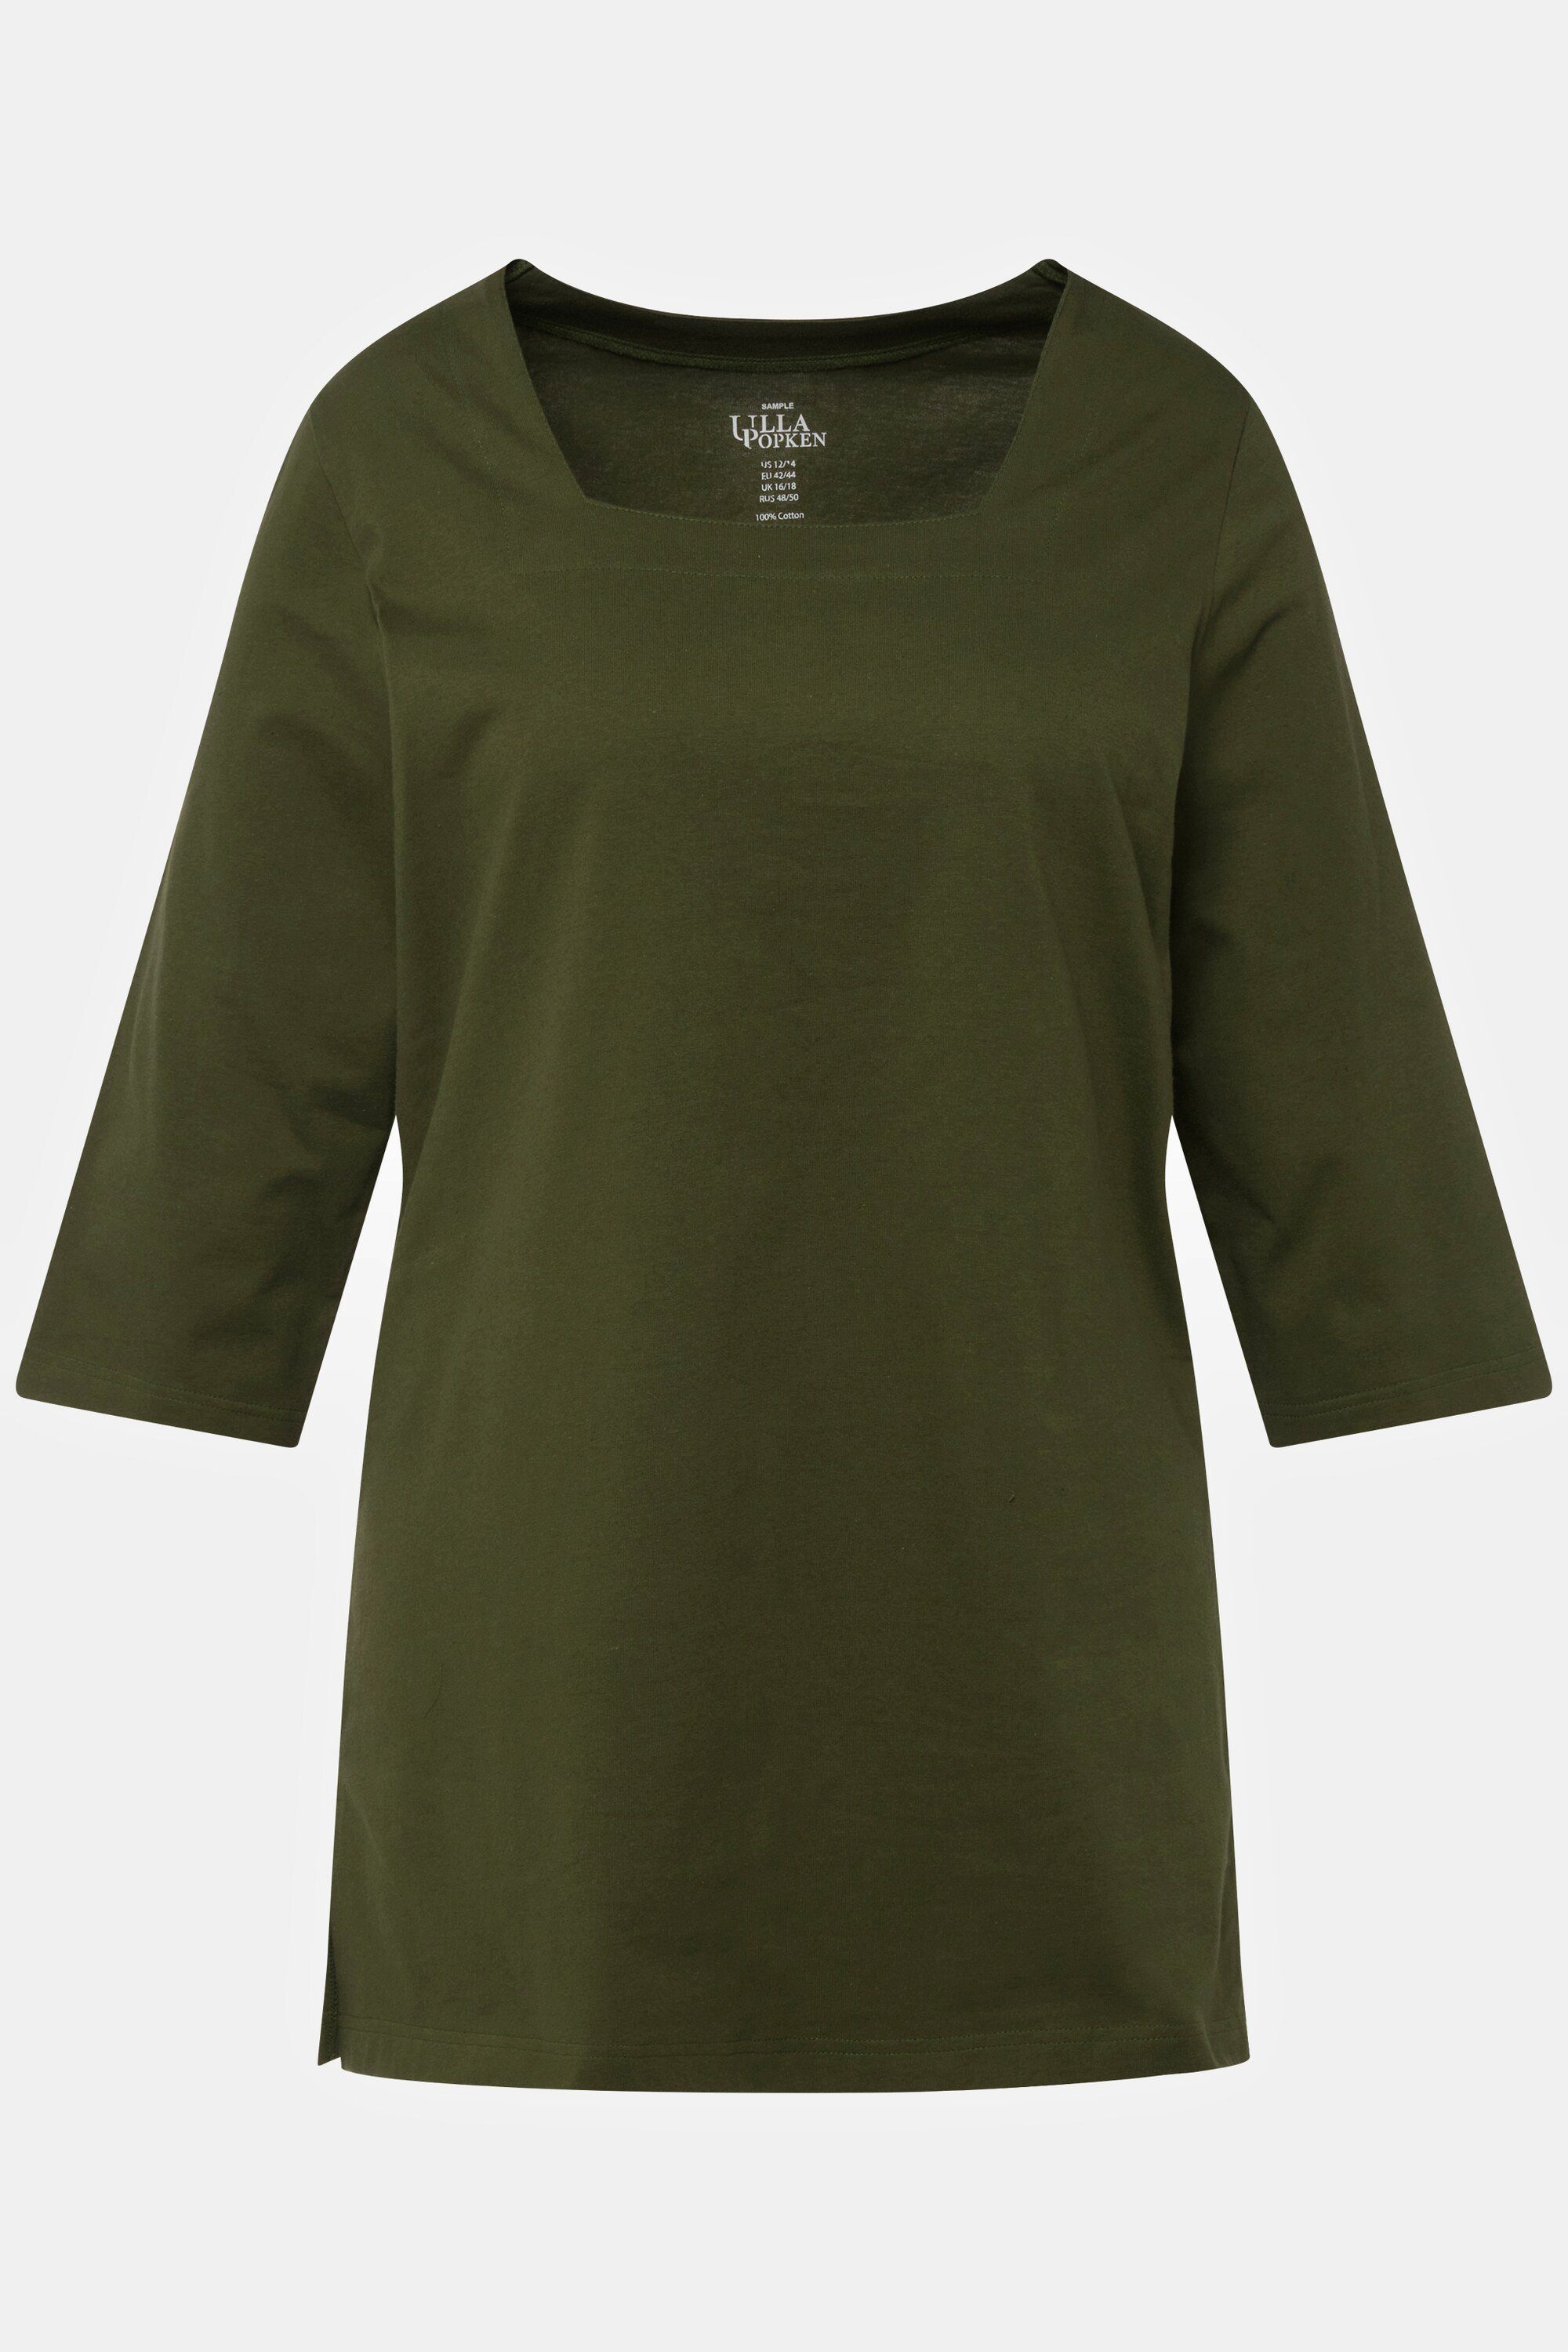 Ulla Popken Longshirt olive A-Line Carree-Ausschnitt 3/4-Arm Longshirt